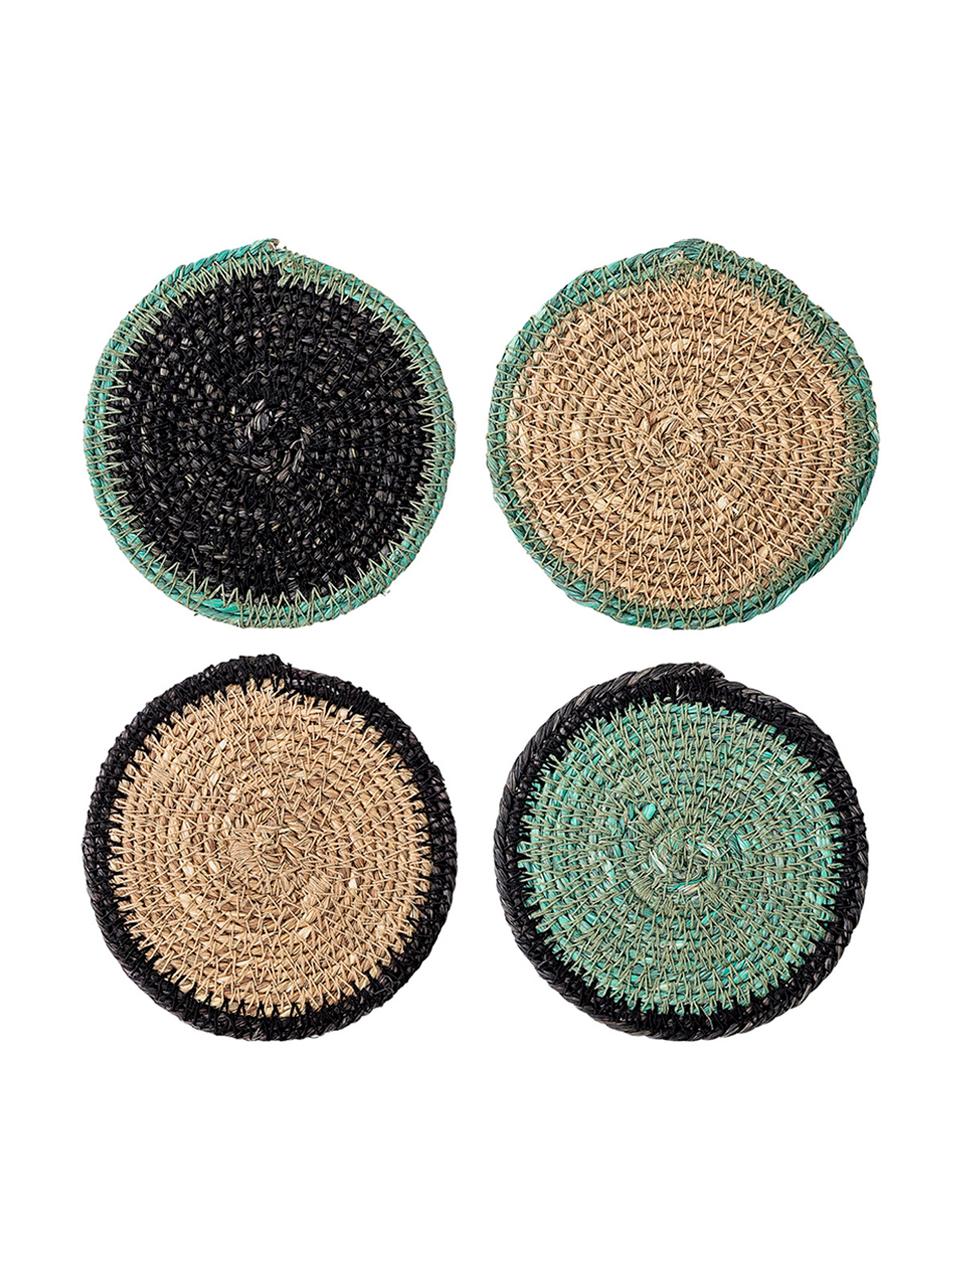 Súprava podložiek z morskej trávy Costa, 5 dielov, Béžová, zelená, čierna